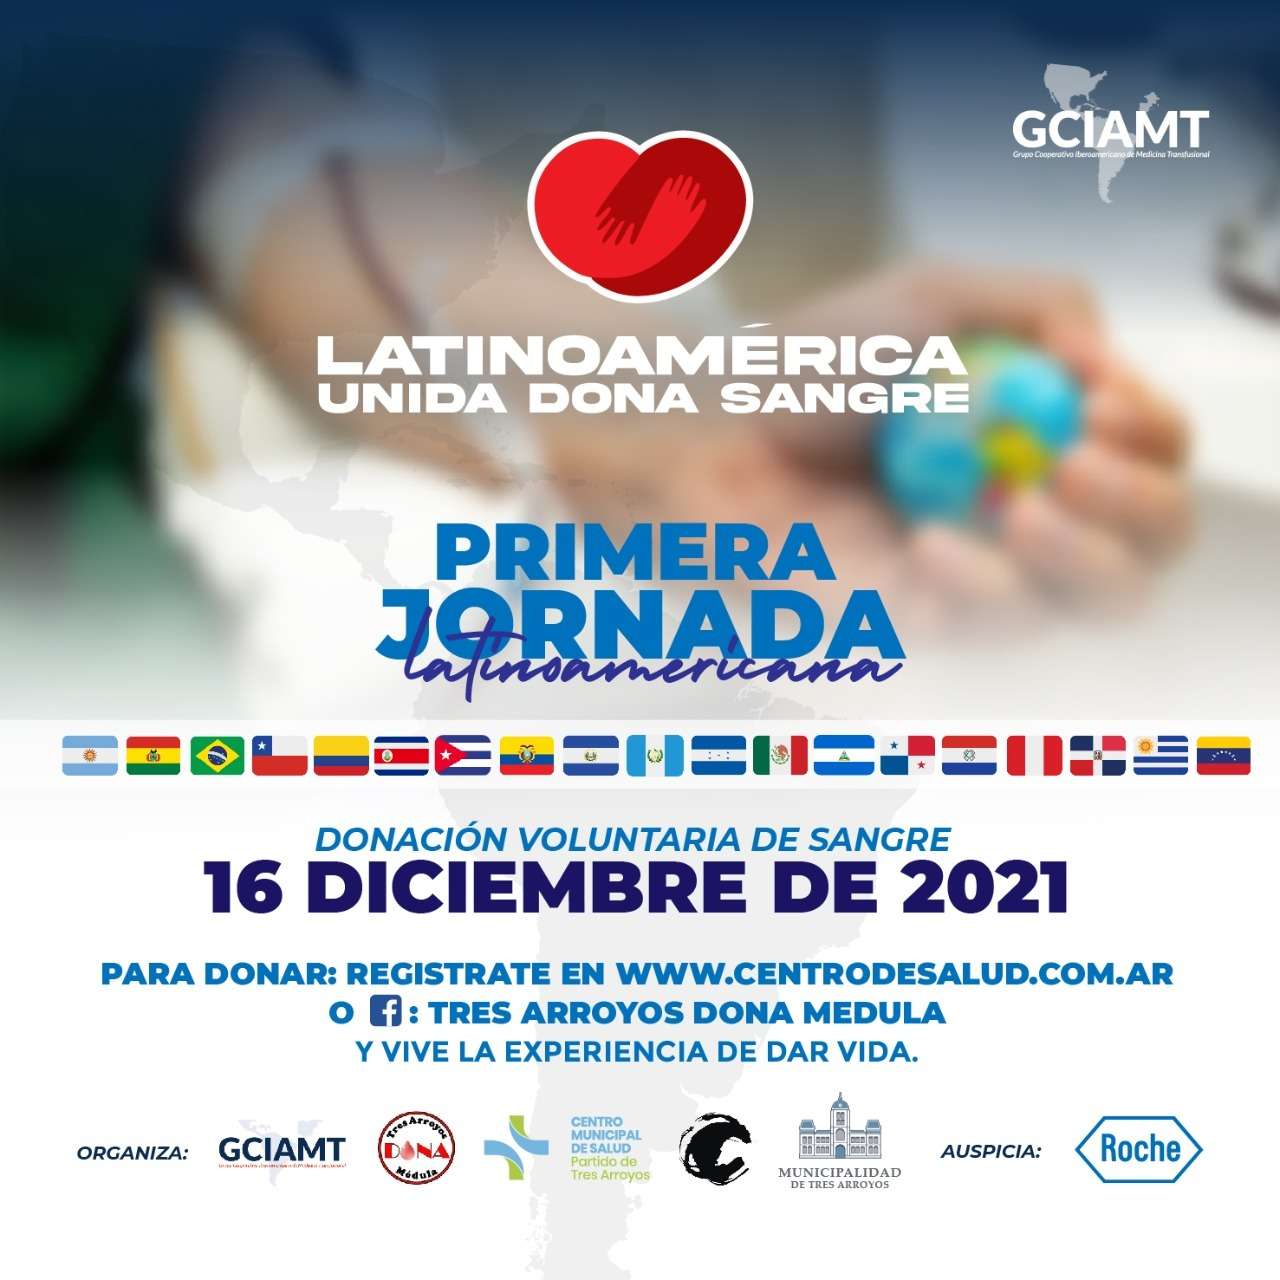 Invitan a una jornada Latinoamericana de Donación de Sangre